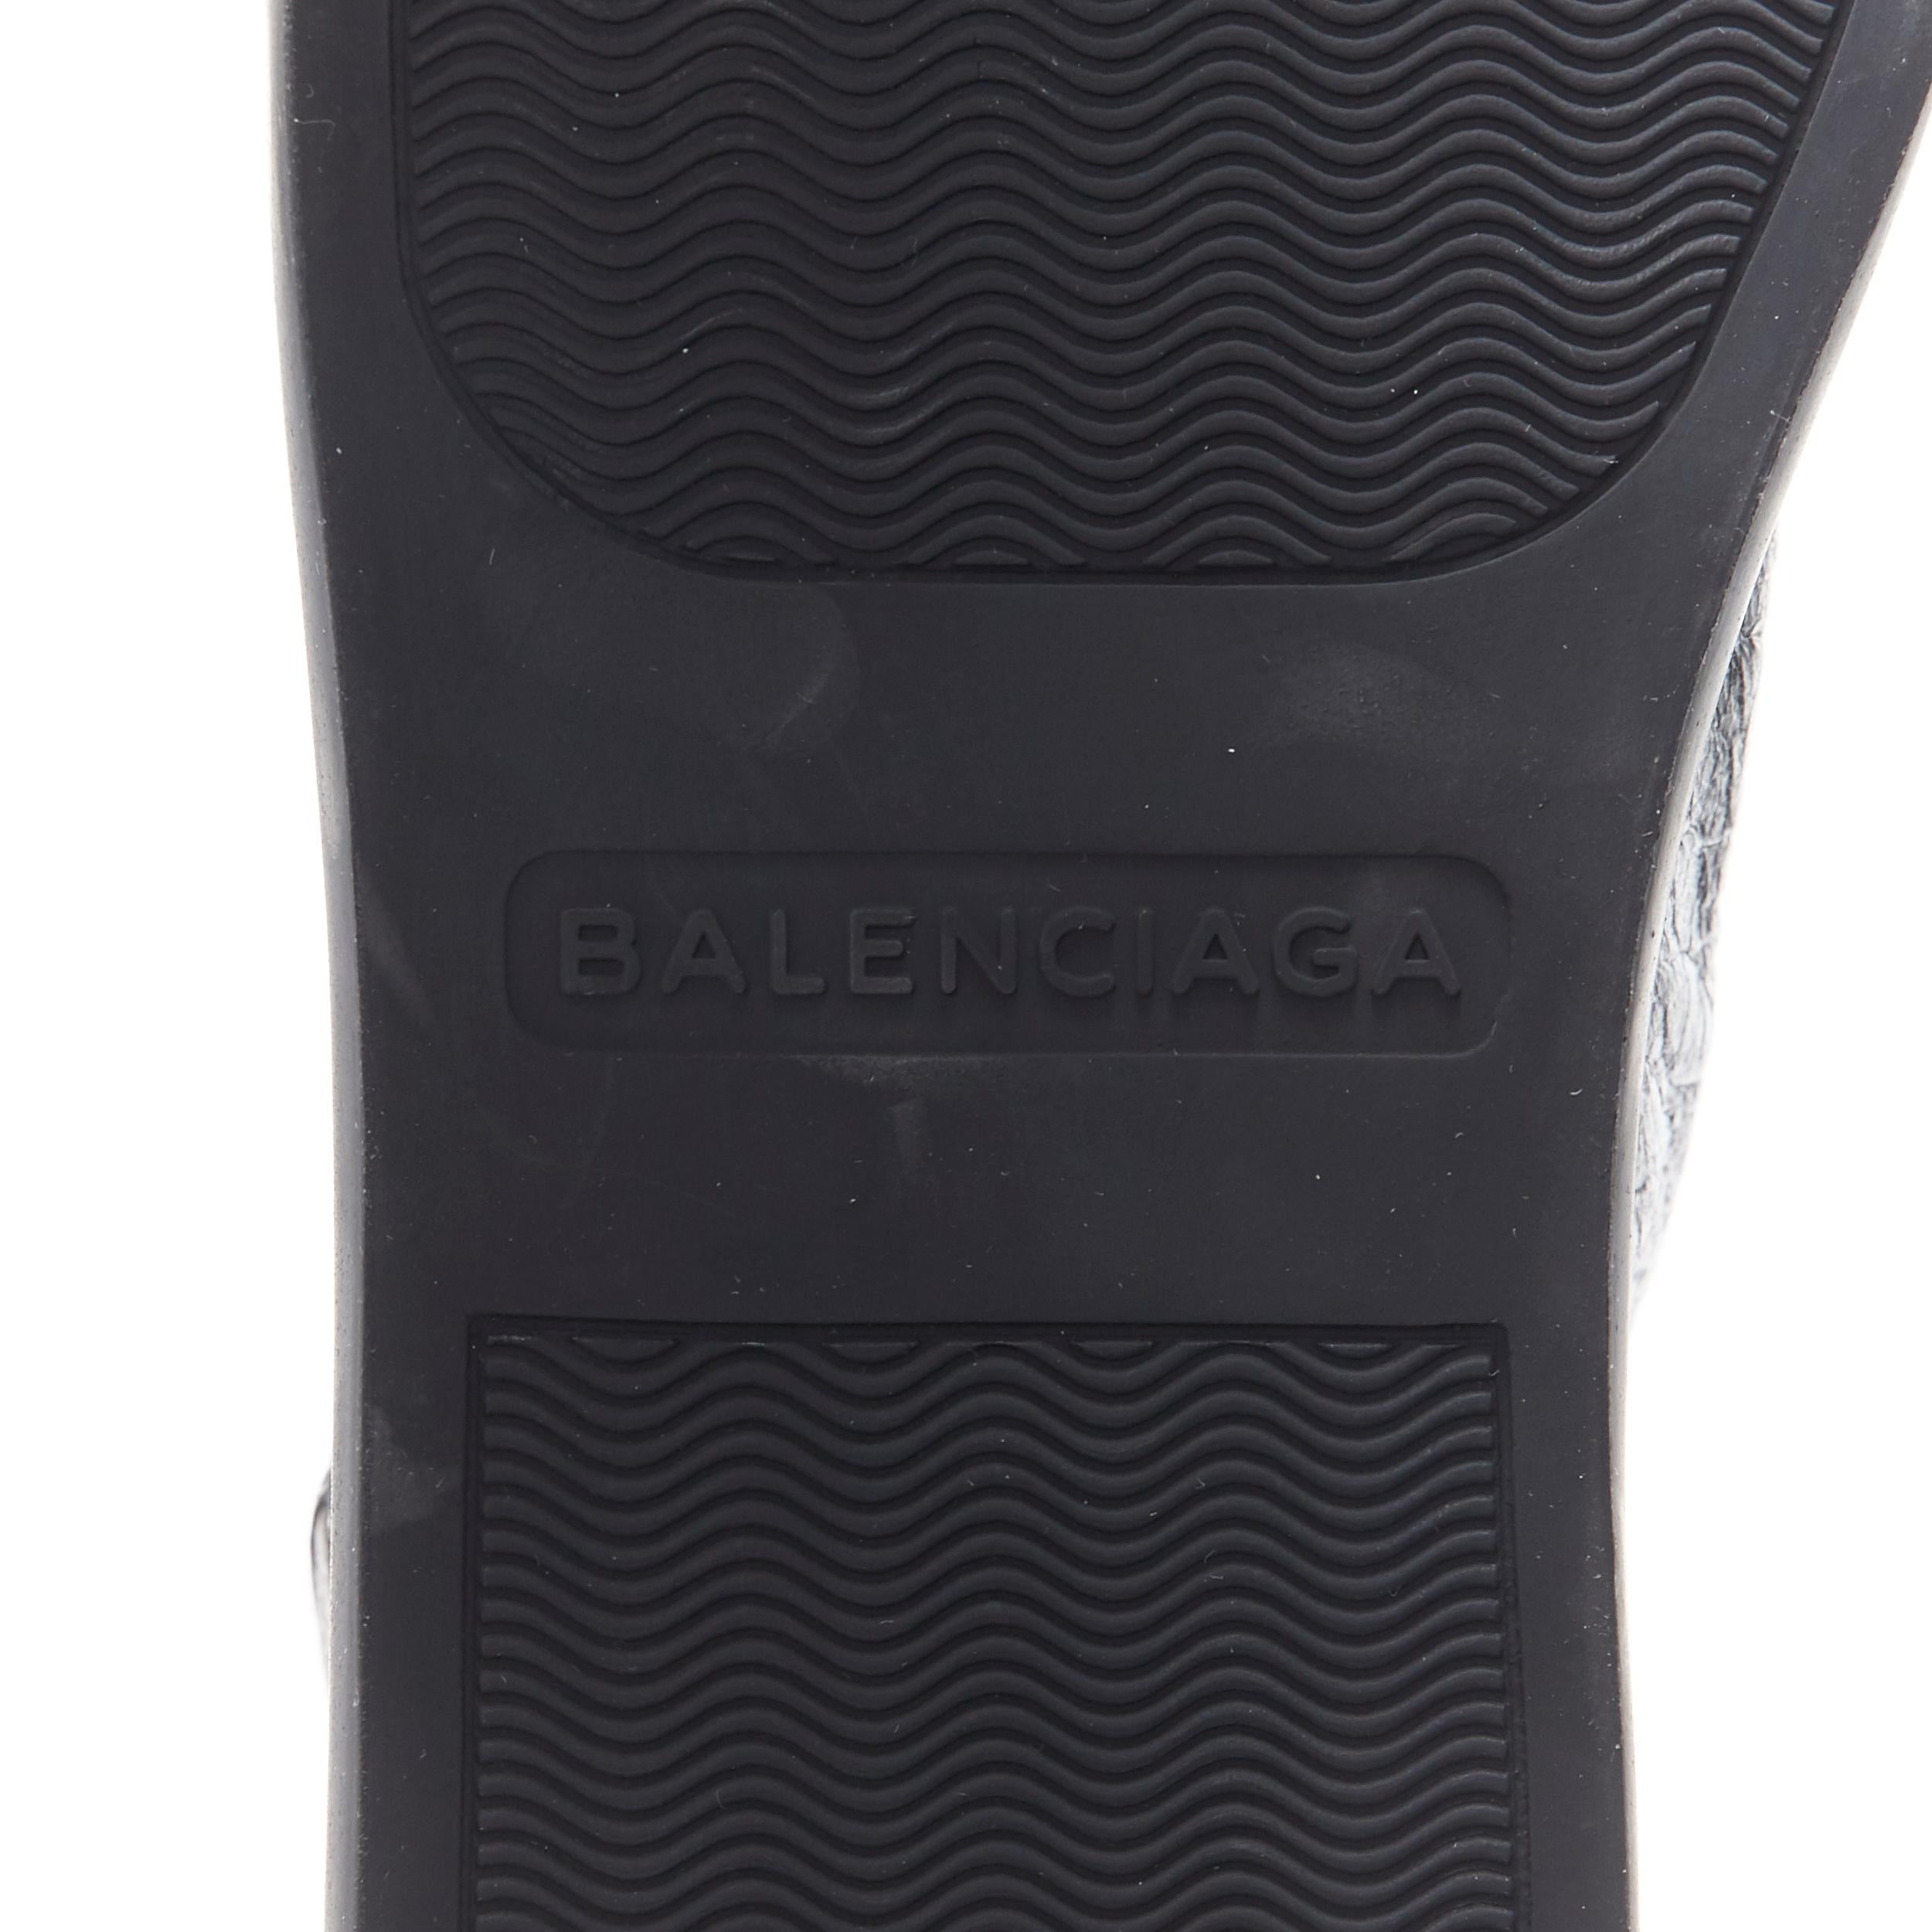 new BALENCIAGA Arena Black Calf high top sneakers EU42 US9 412381 WAY40 1000 5